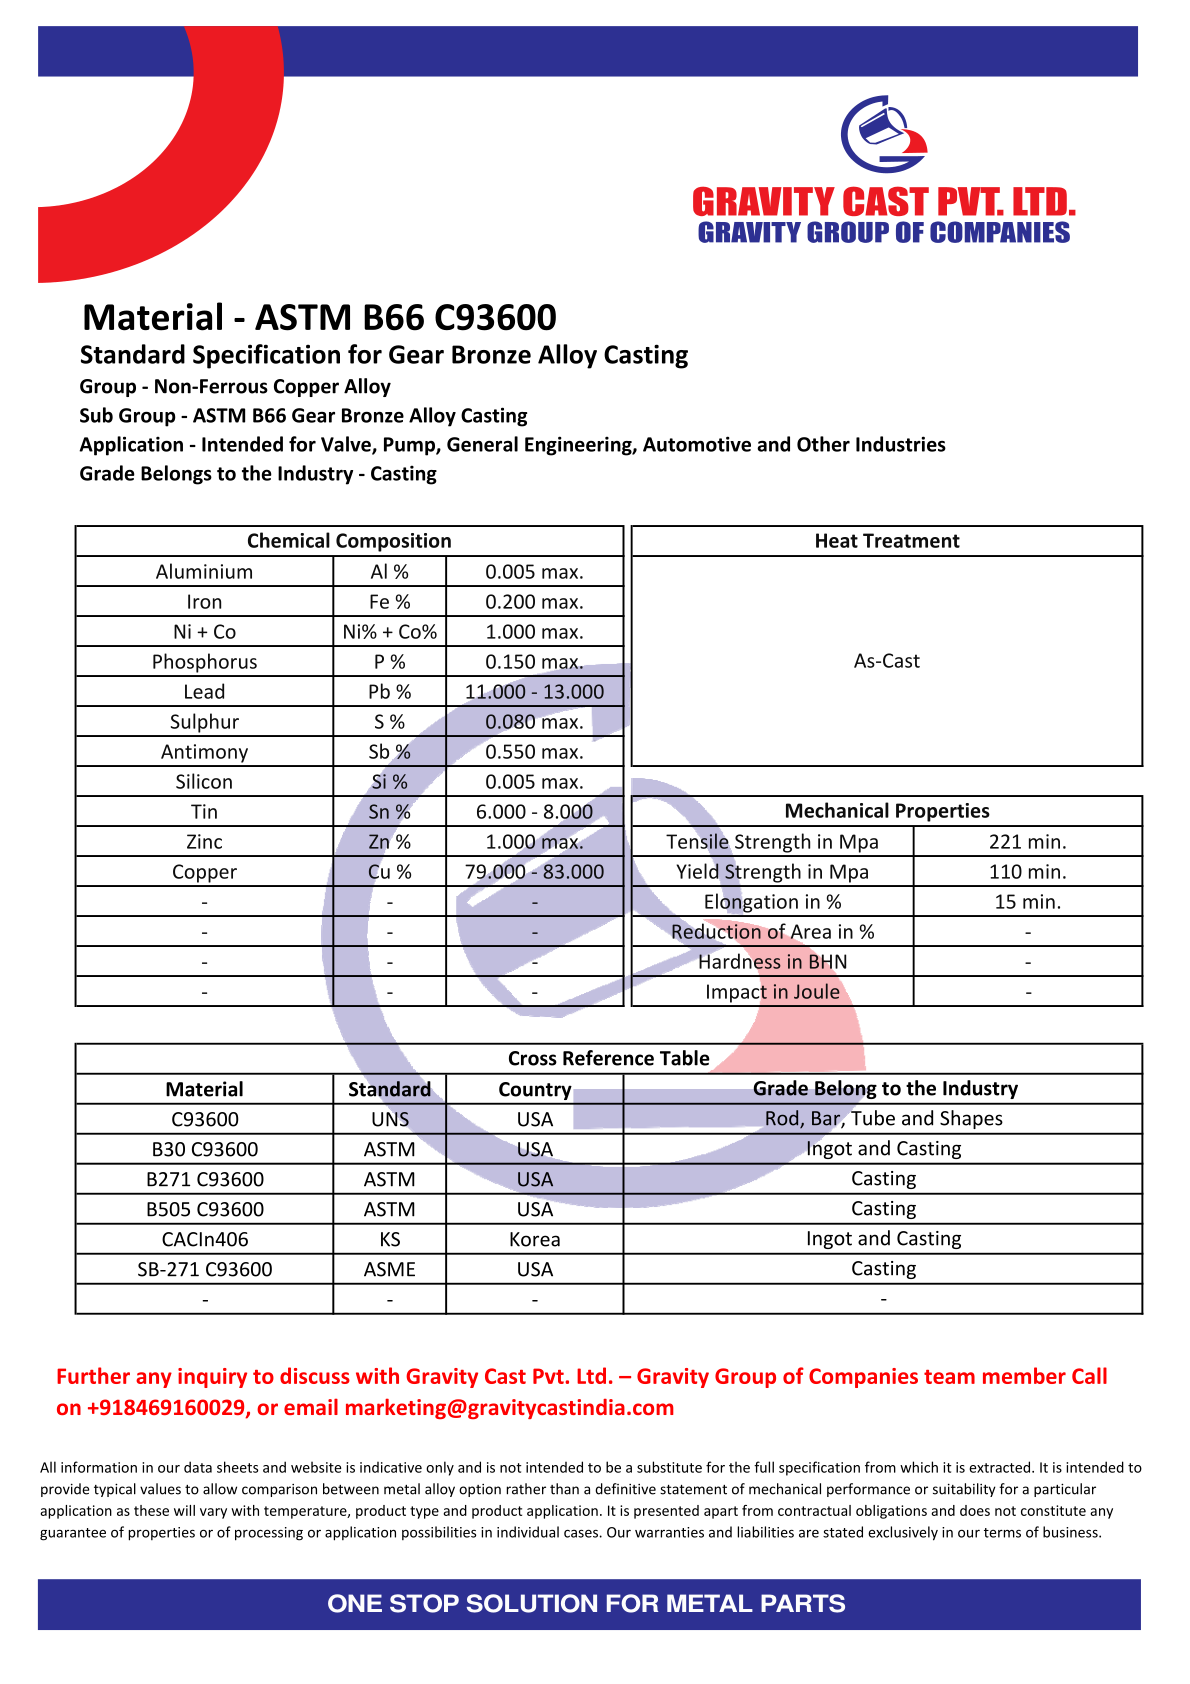 ASTM B66 C93600.pdf